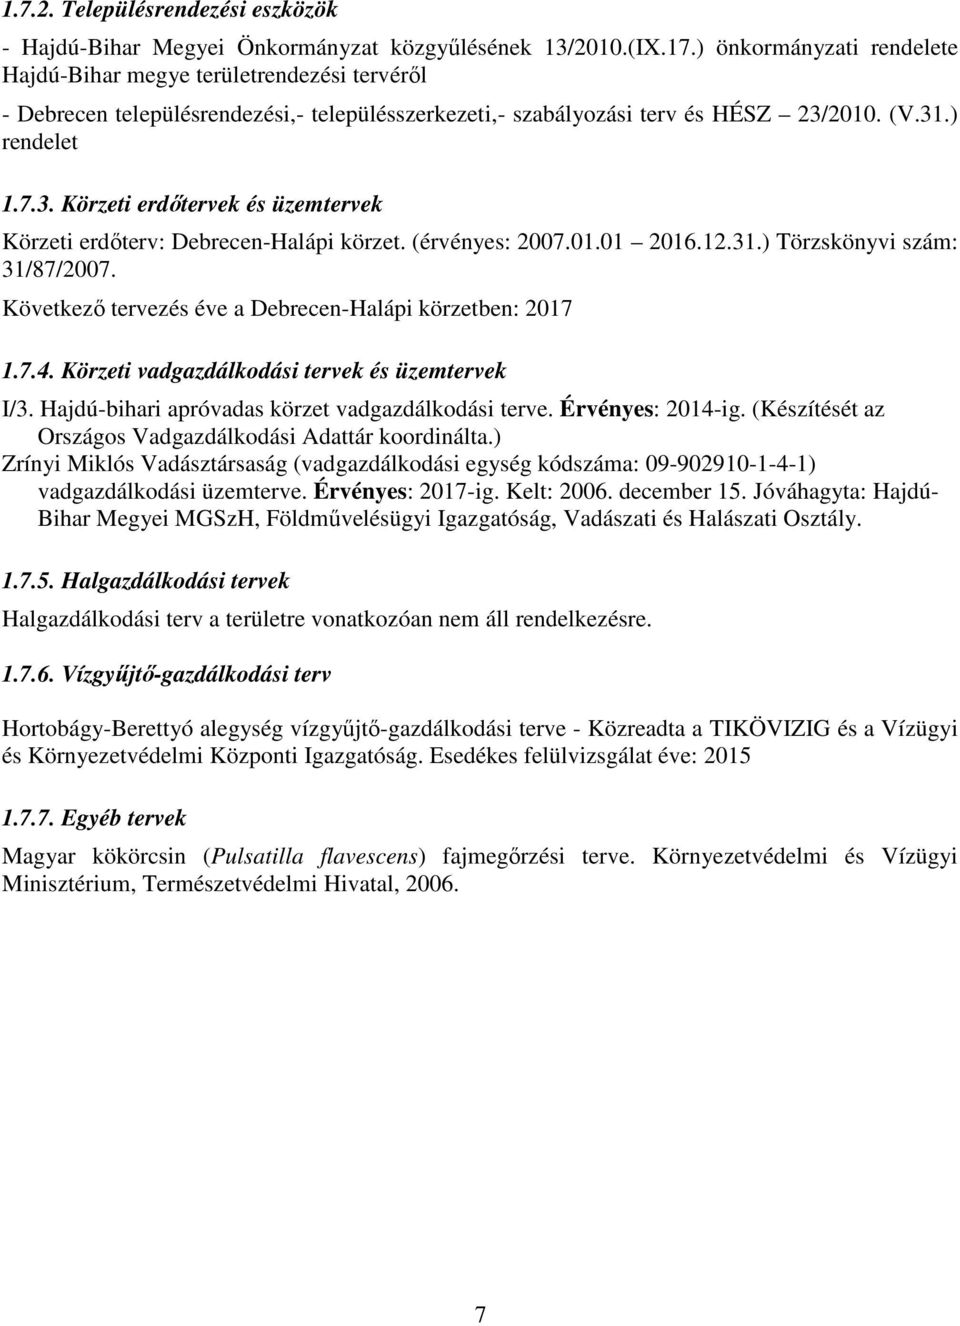 2010. (V.31.) rendelet 1.7.3. Körzeti erdőtervek és üzemtervek Körzeti erdőterv: Debrecen-Halápi körzet. (érvényes: 2007.01.01 2016.12.31.) Törzskönyvi szám: 31/87/2007.